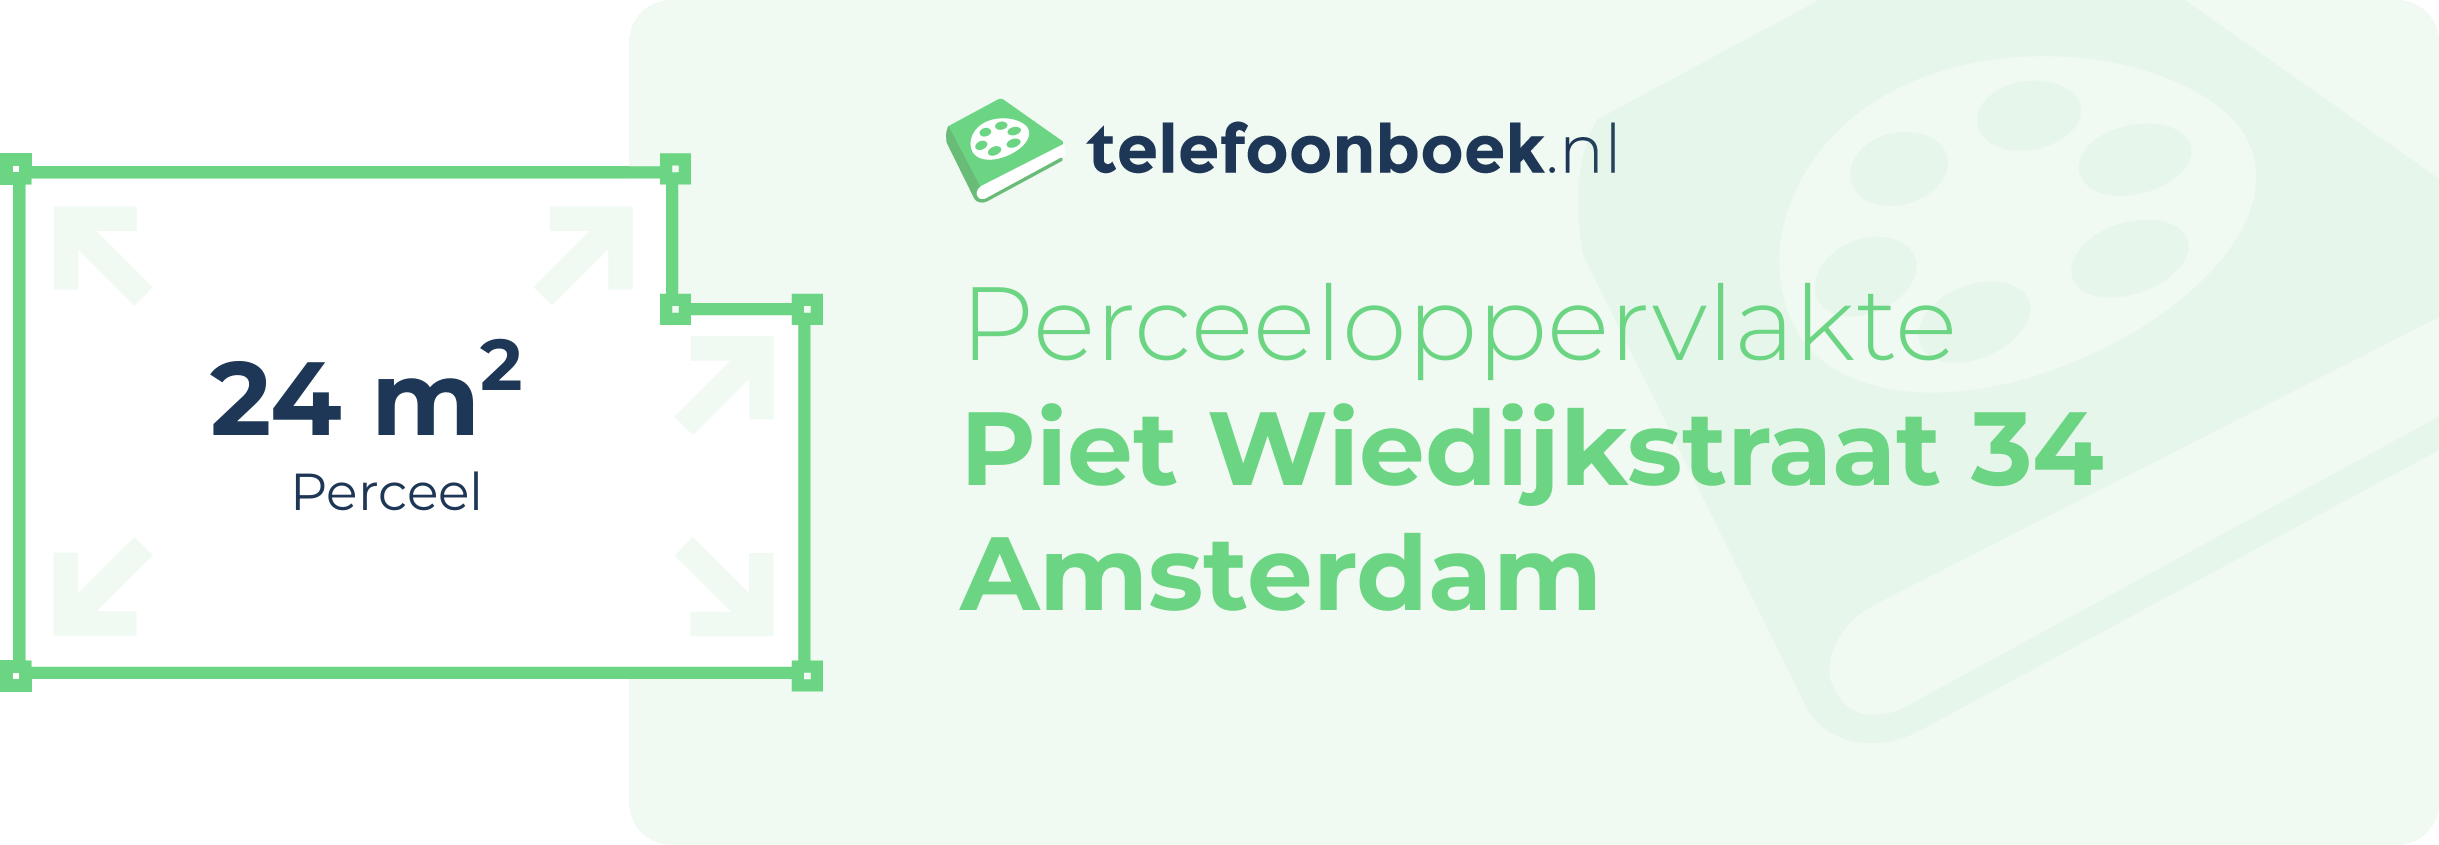 Perceeloppervlakte Piet Wiedijkstraat 34 Amsterdam